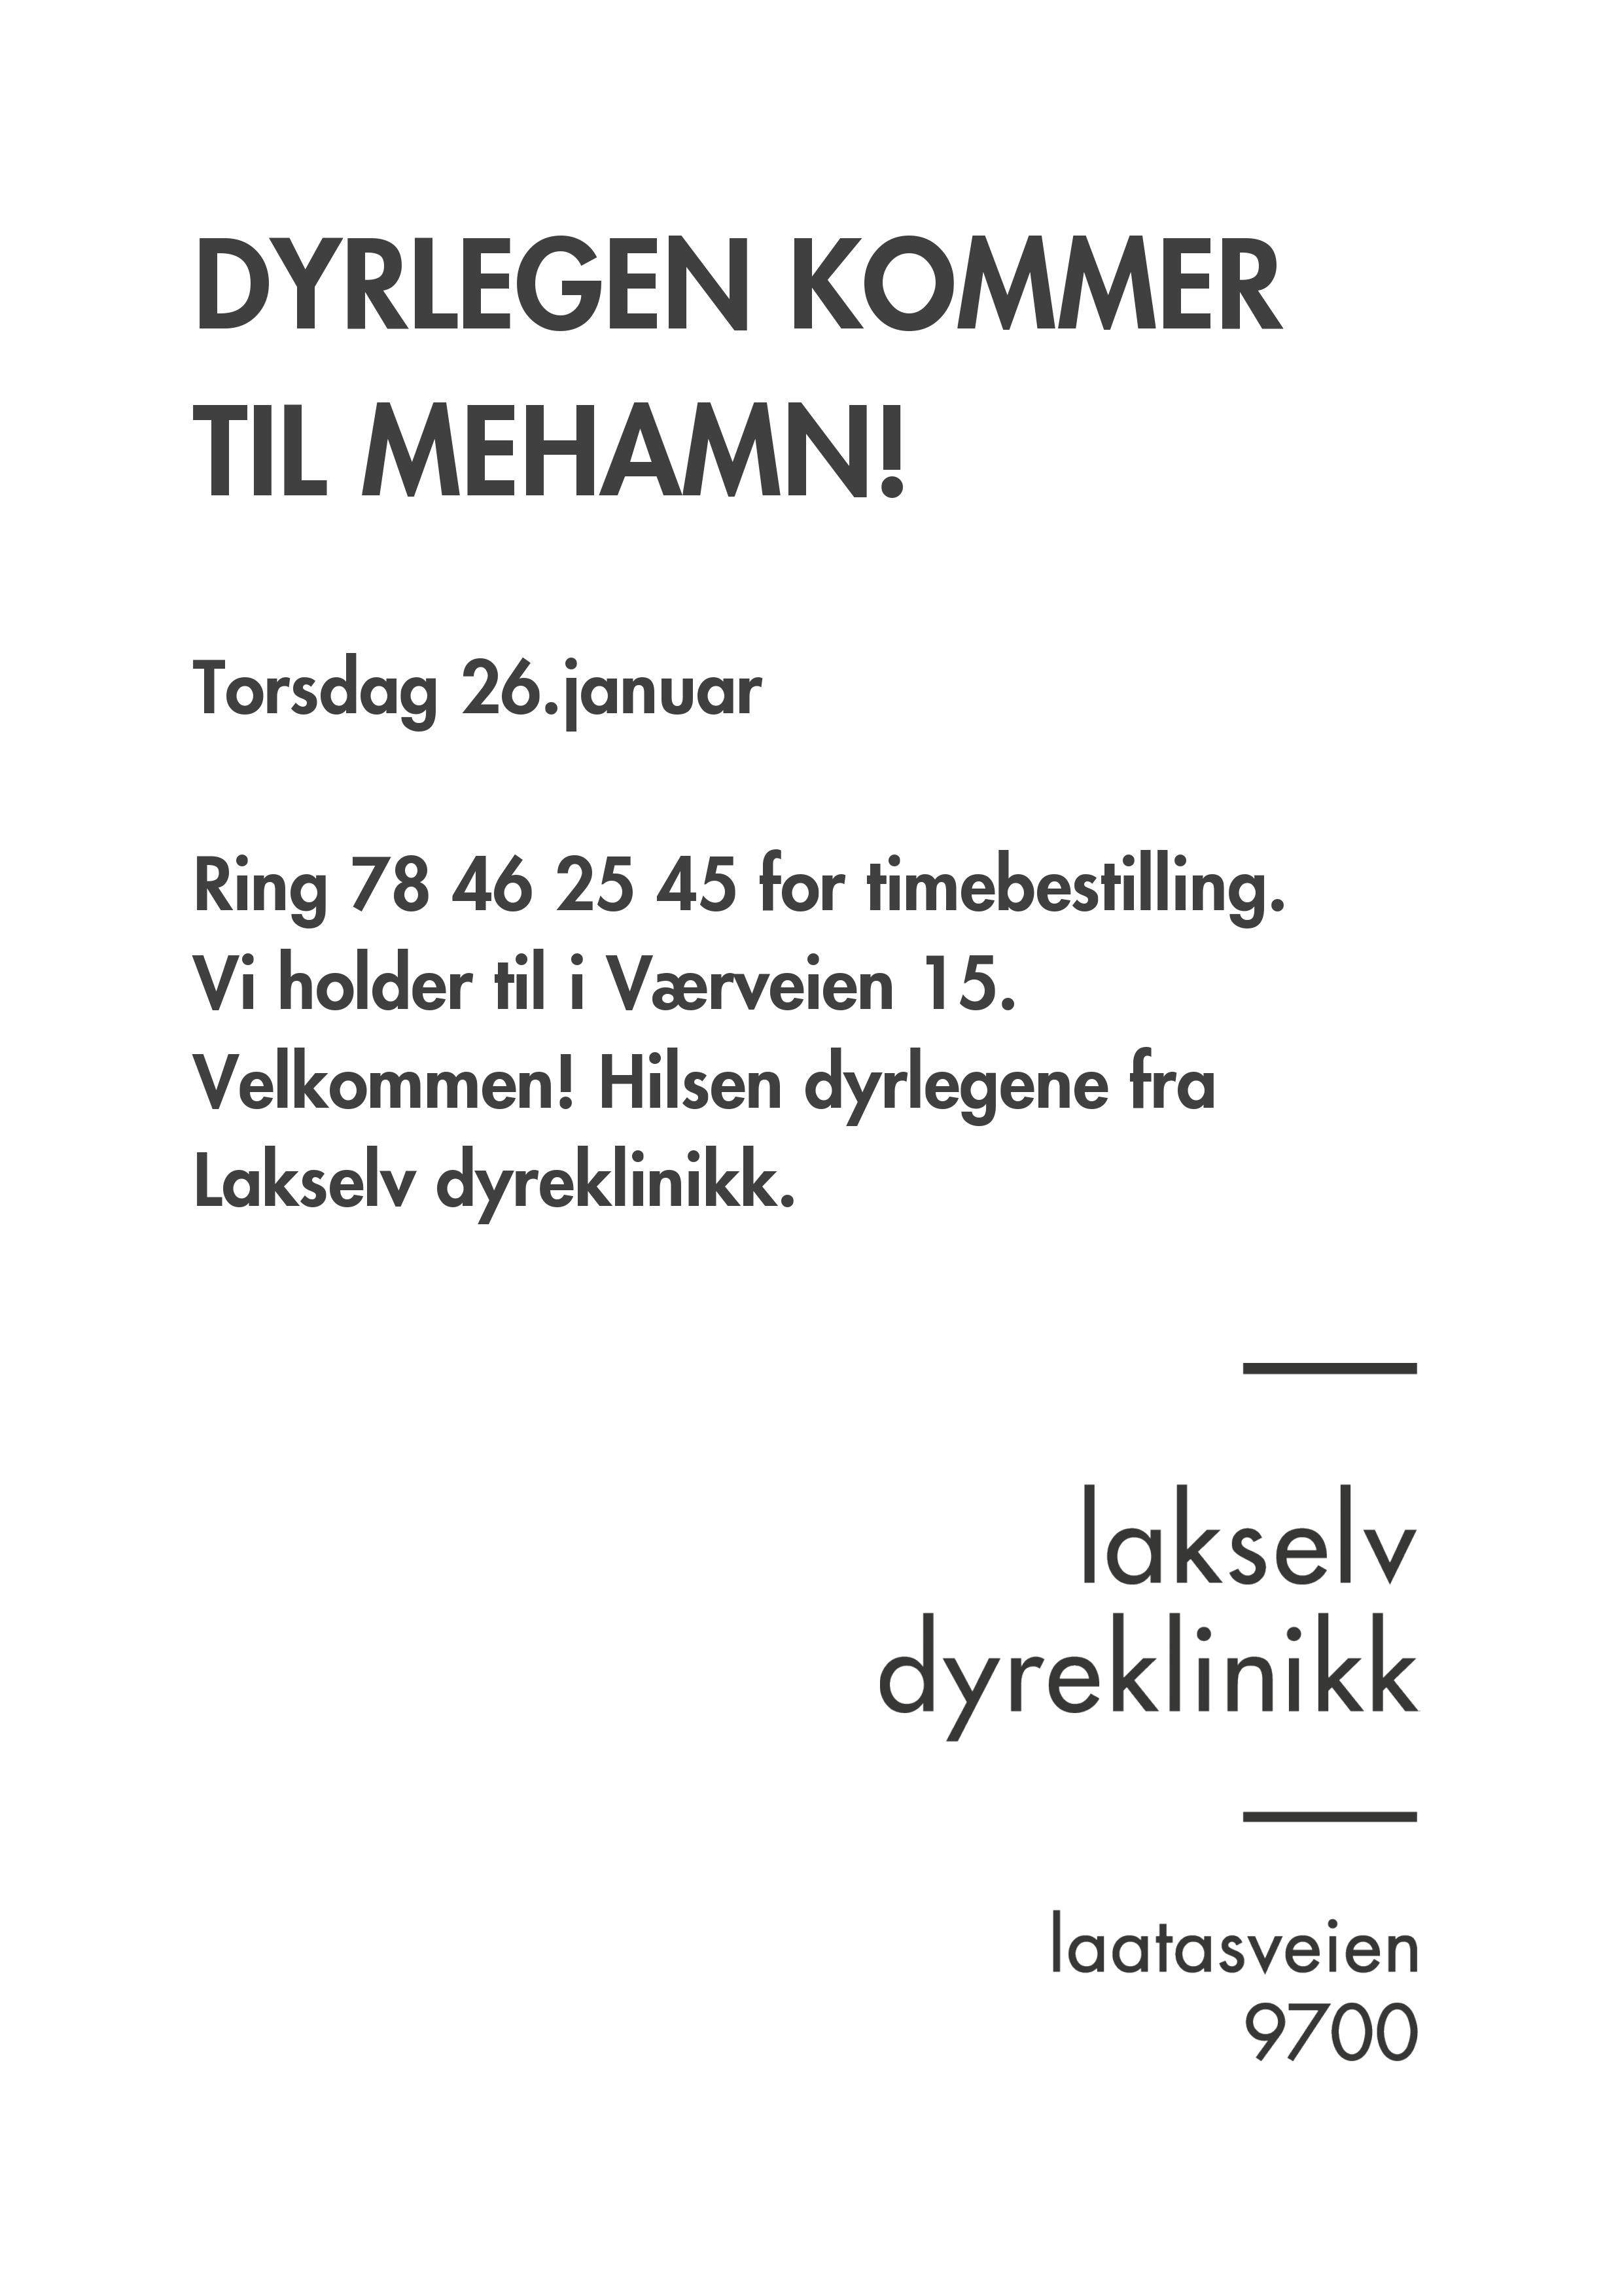 Dyrlegen kommer til Mehamn 26.januar 2017